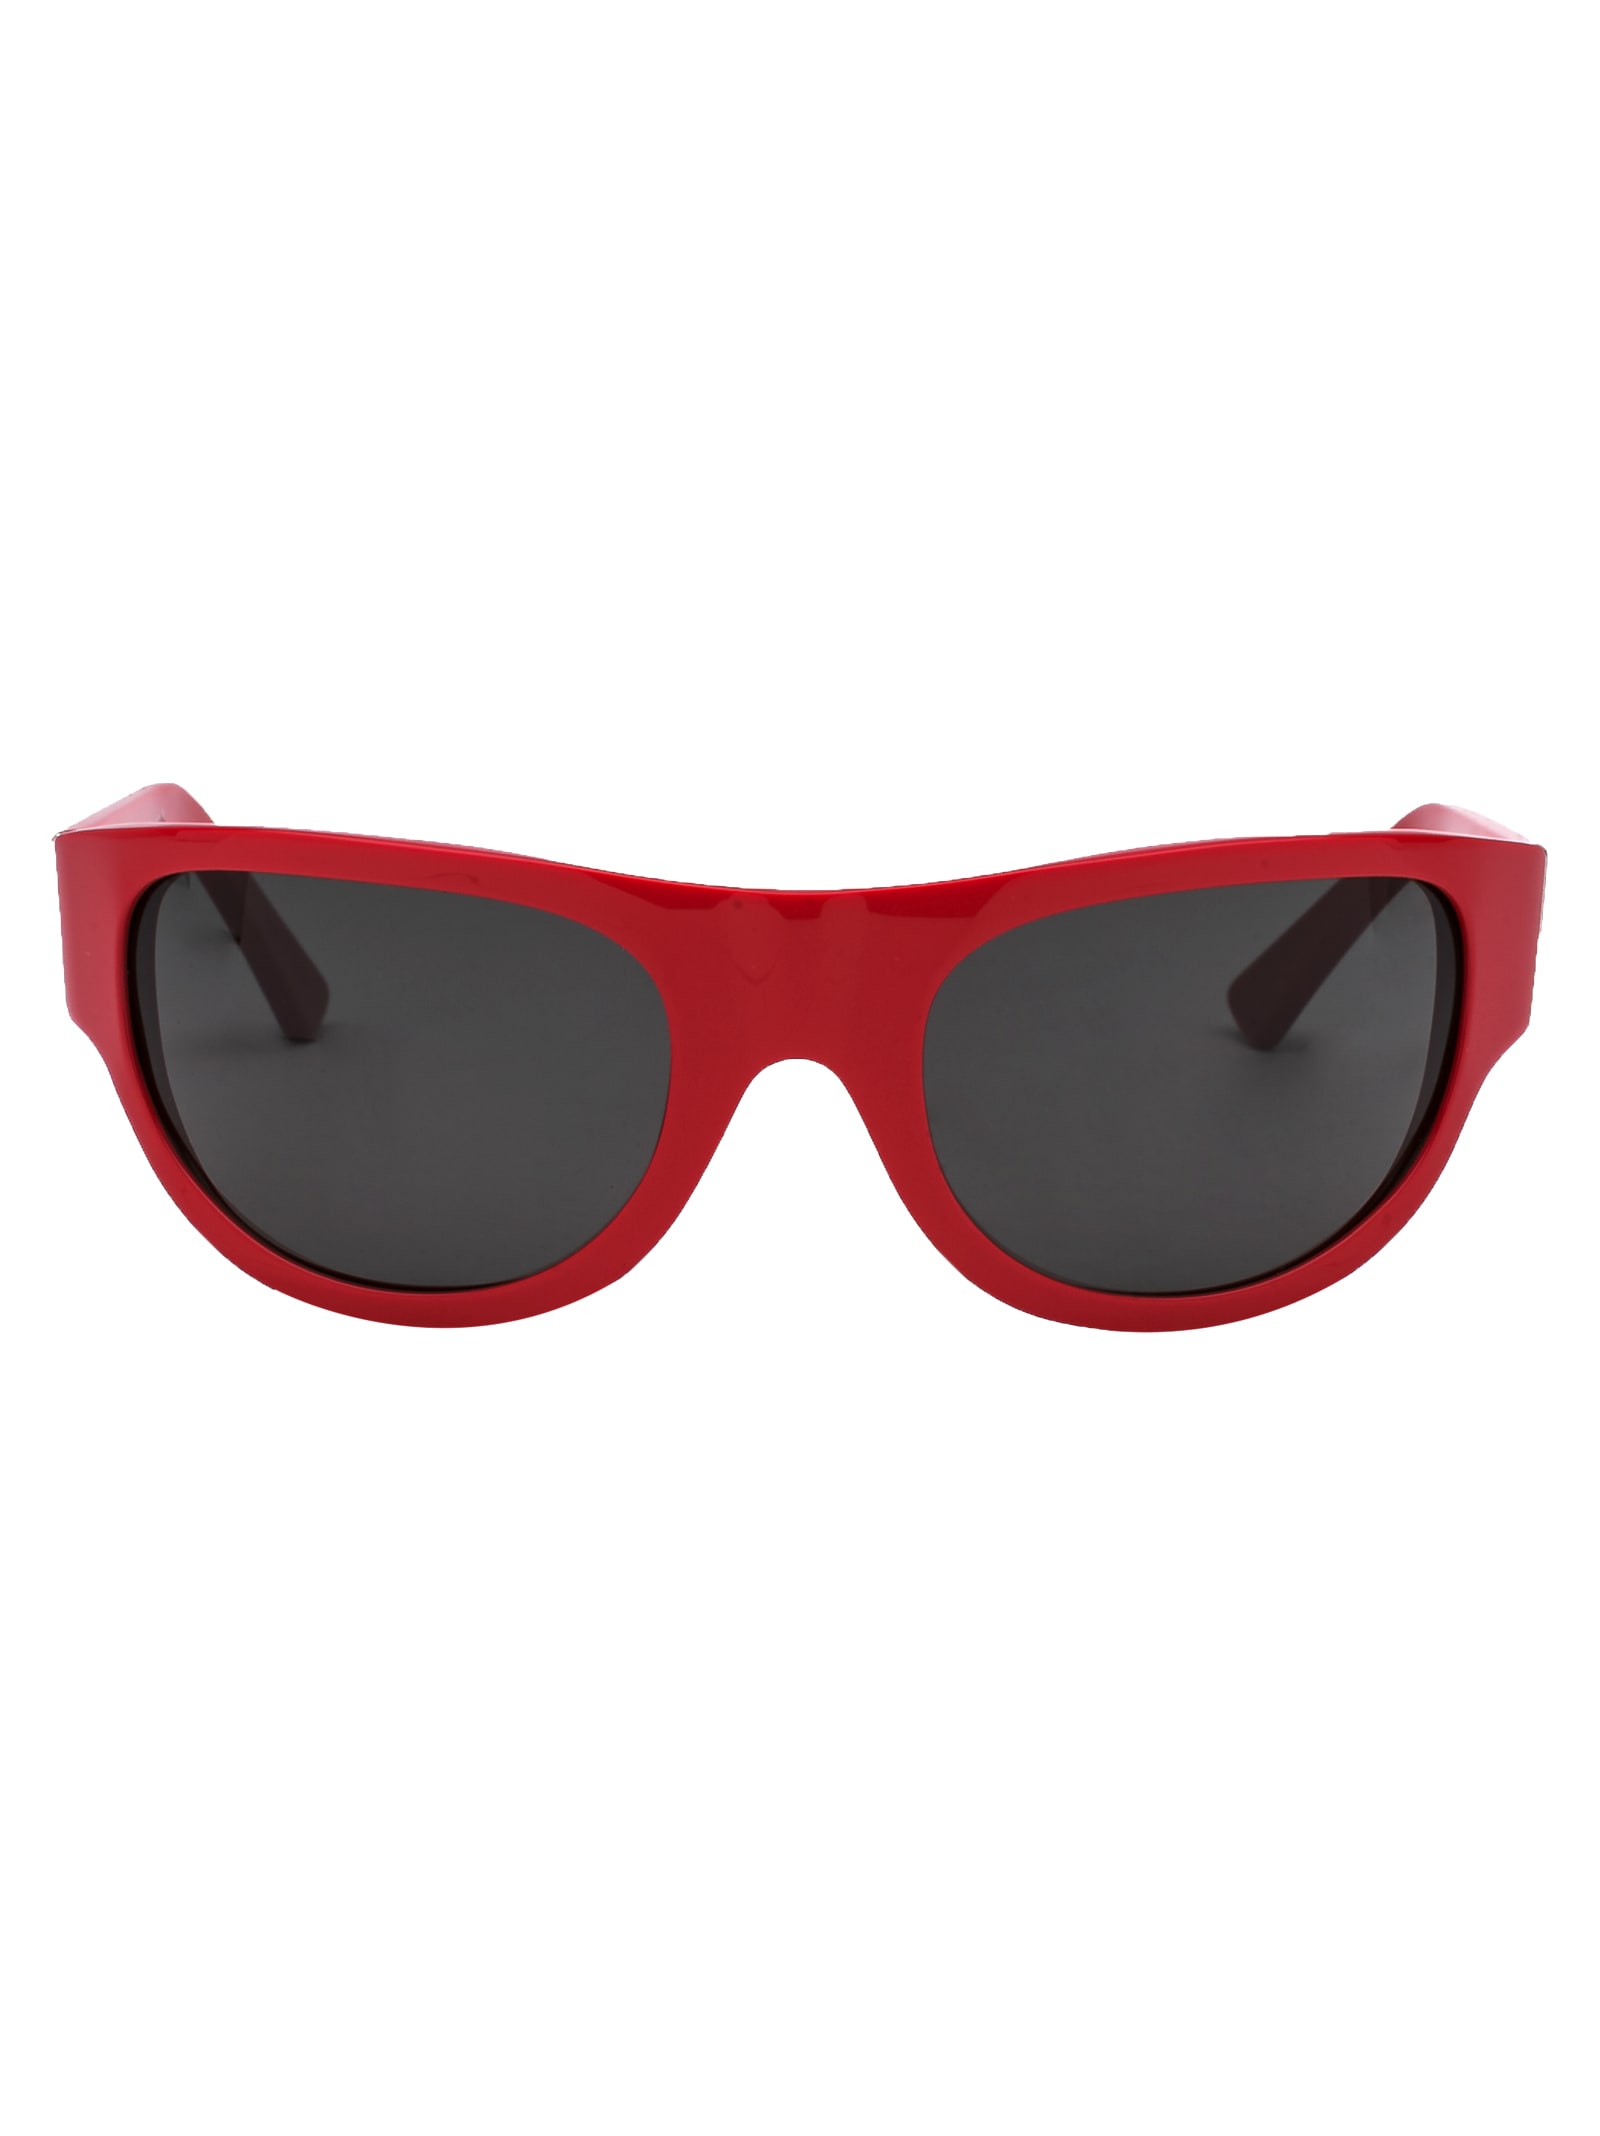 RETROSUPERFUTURE Sunglasses | italist, ALWAYS LIKE A SALE